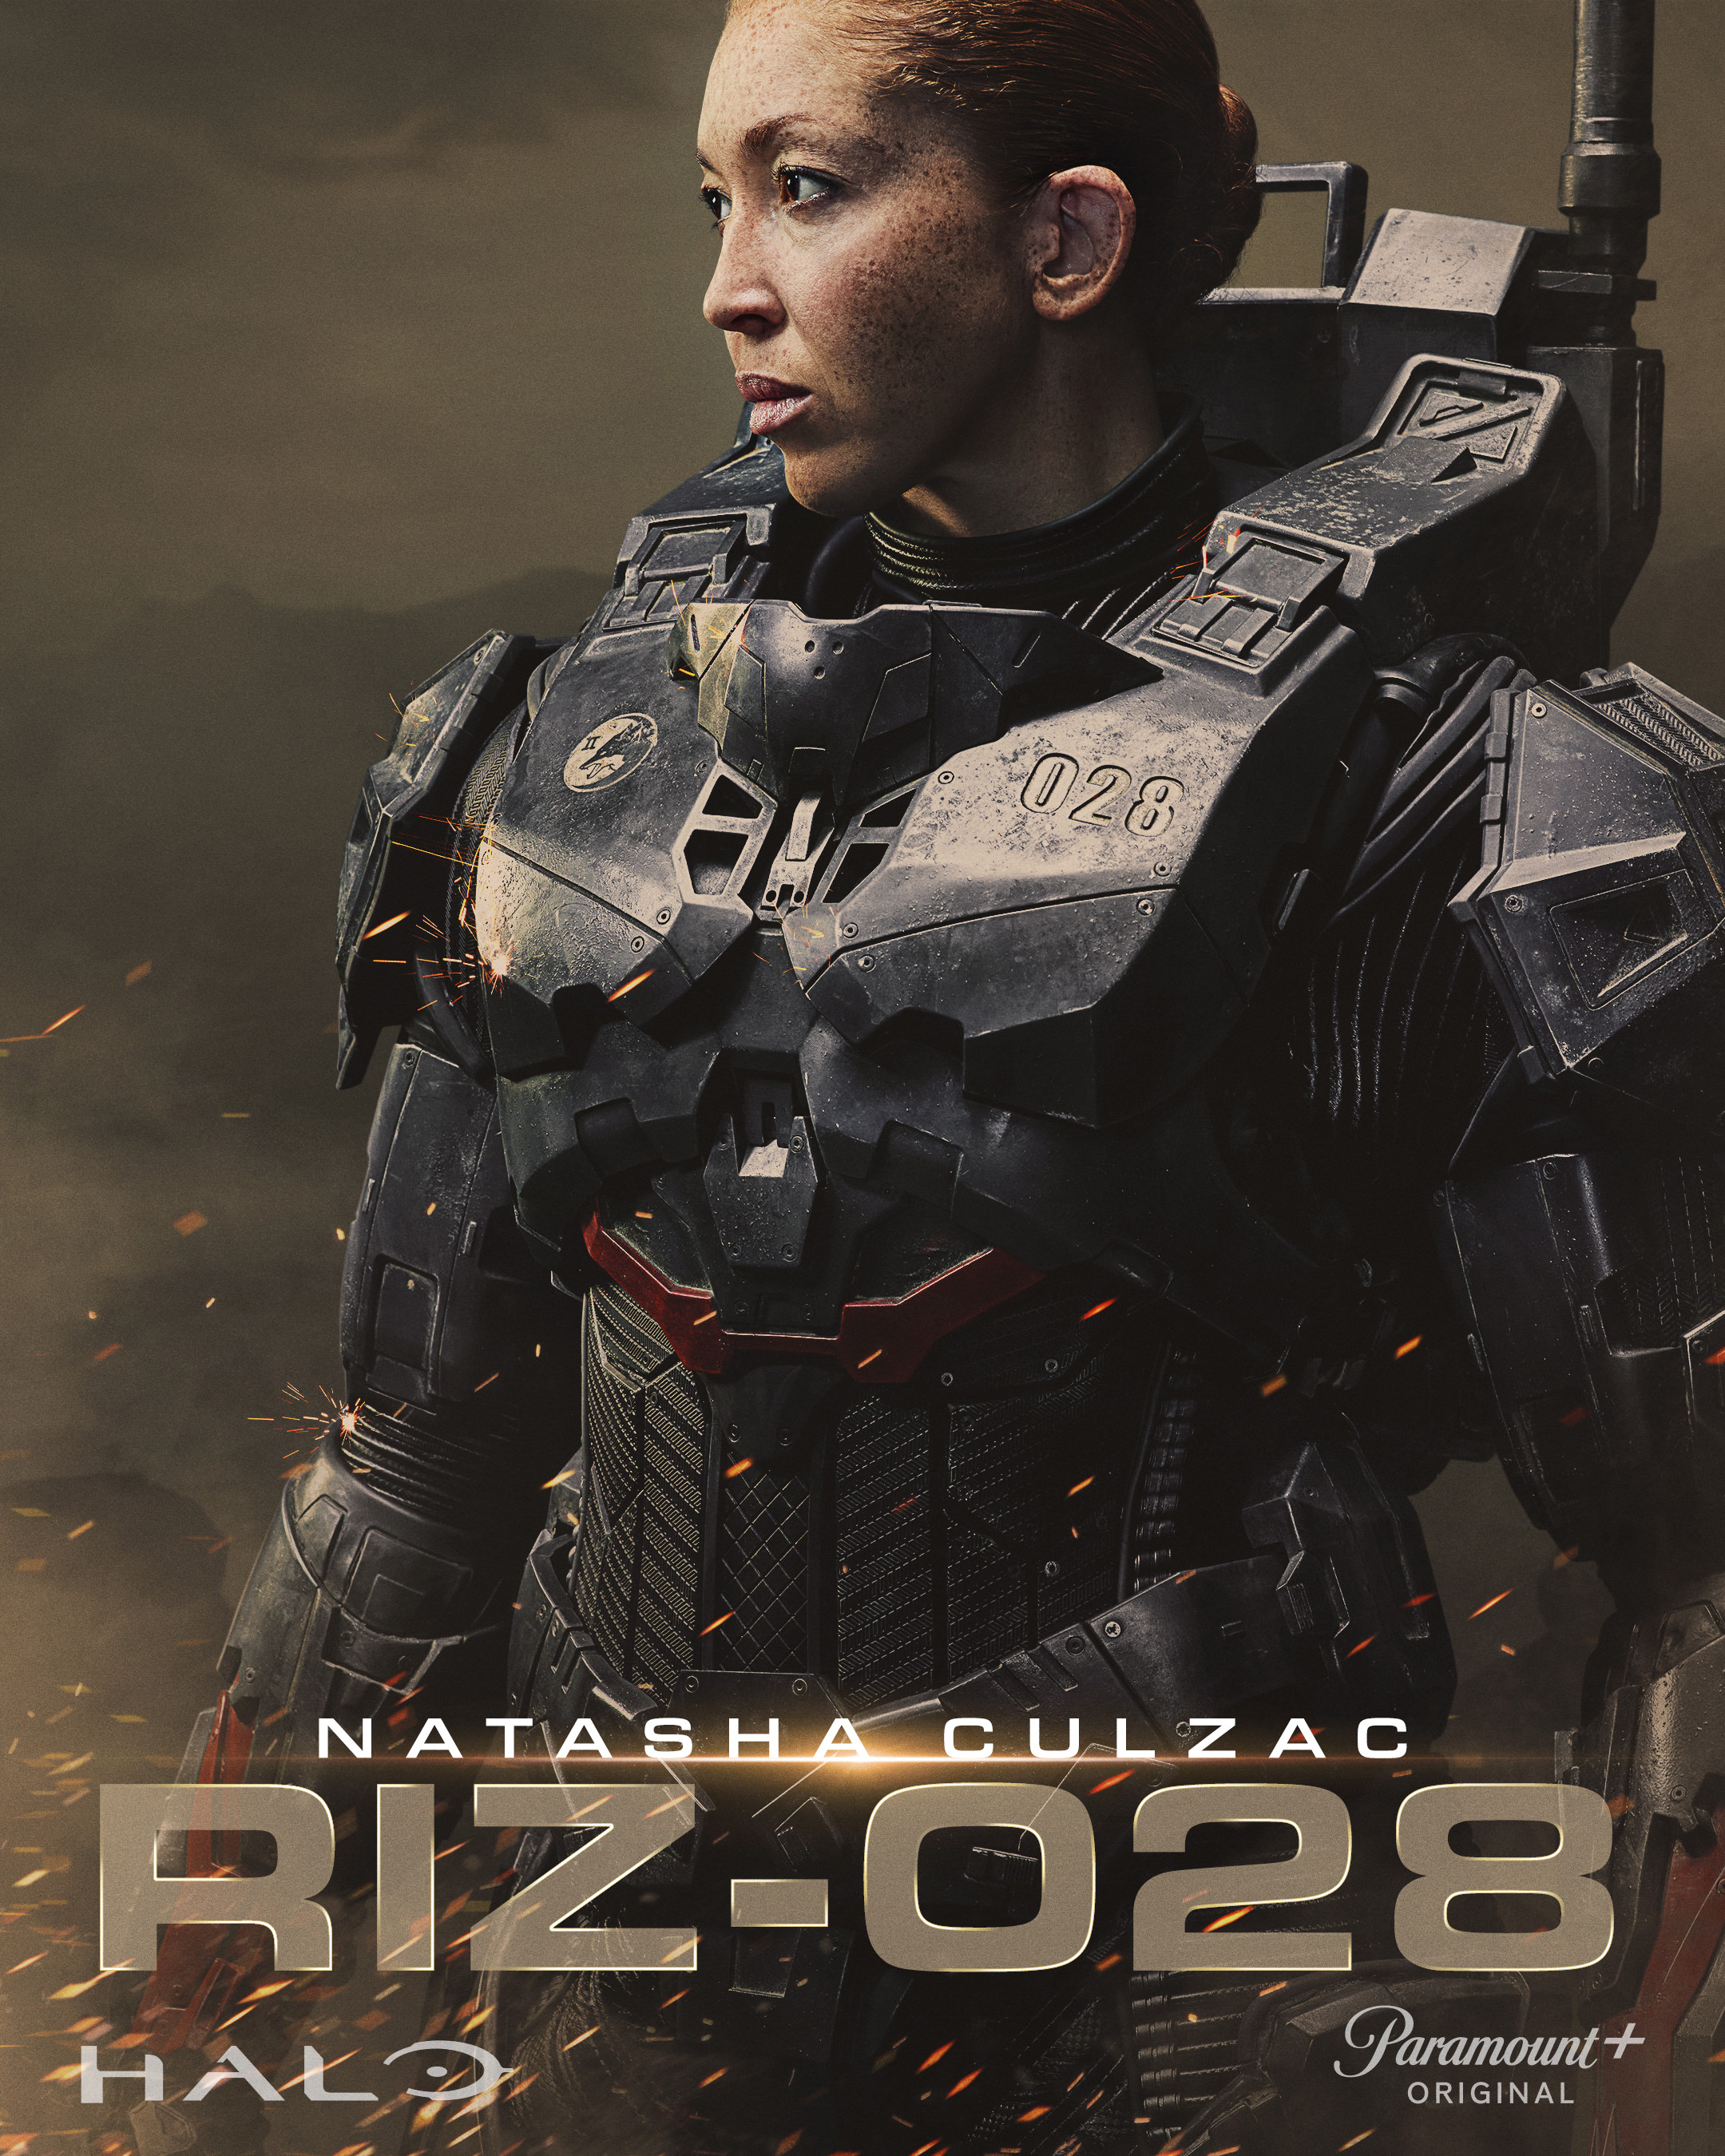 پوستر ناتاشا کولزاک در نقش ریز-۰۲۸ سریال هیلو